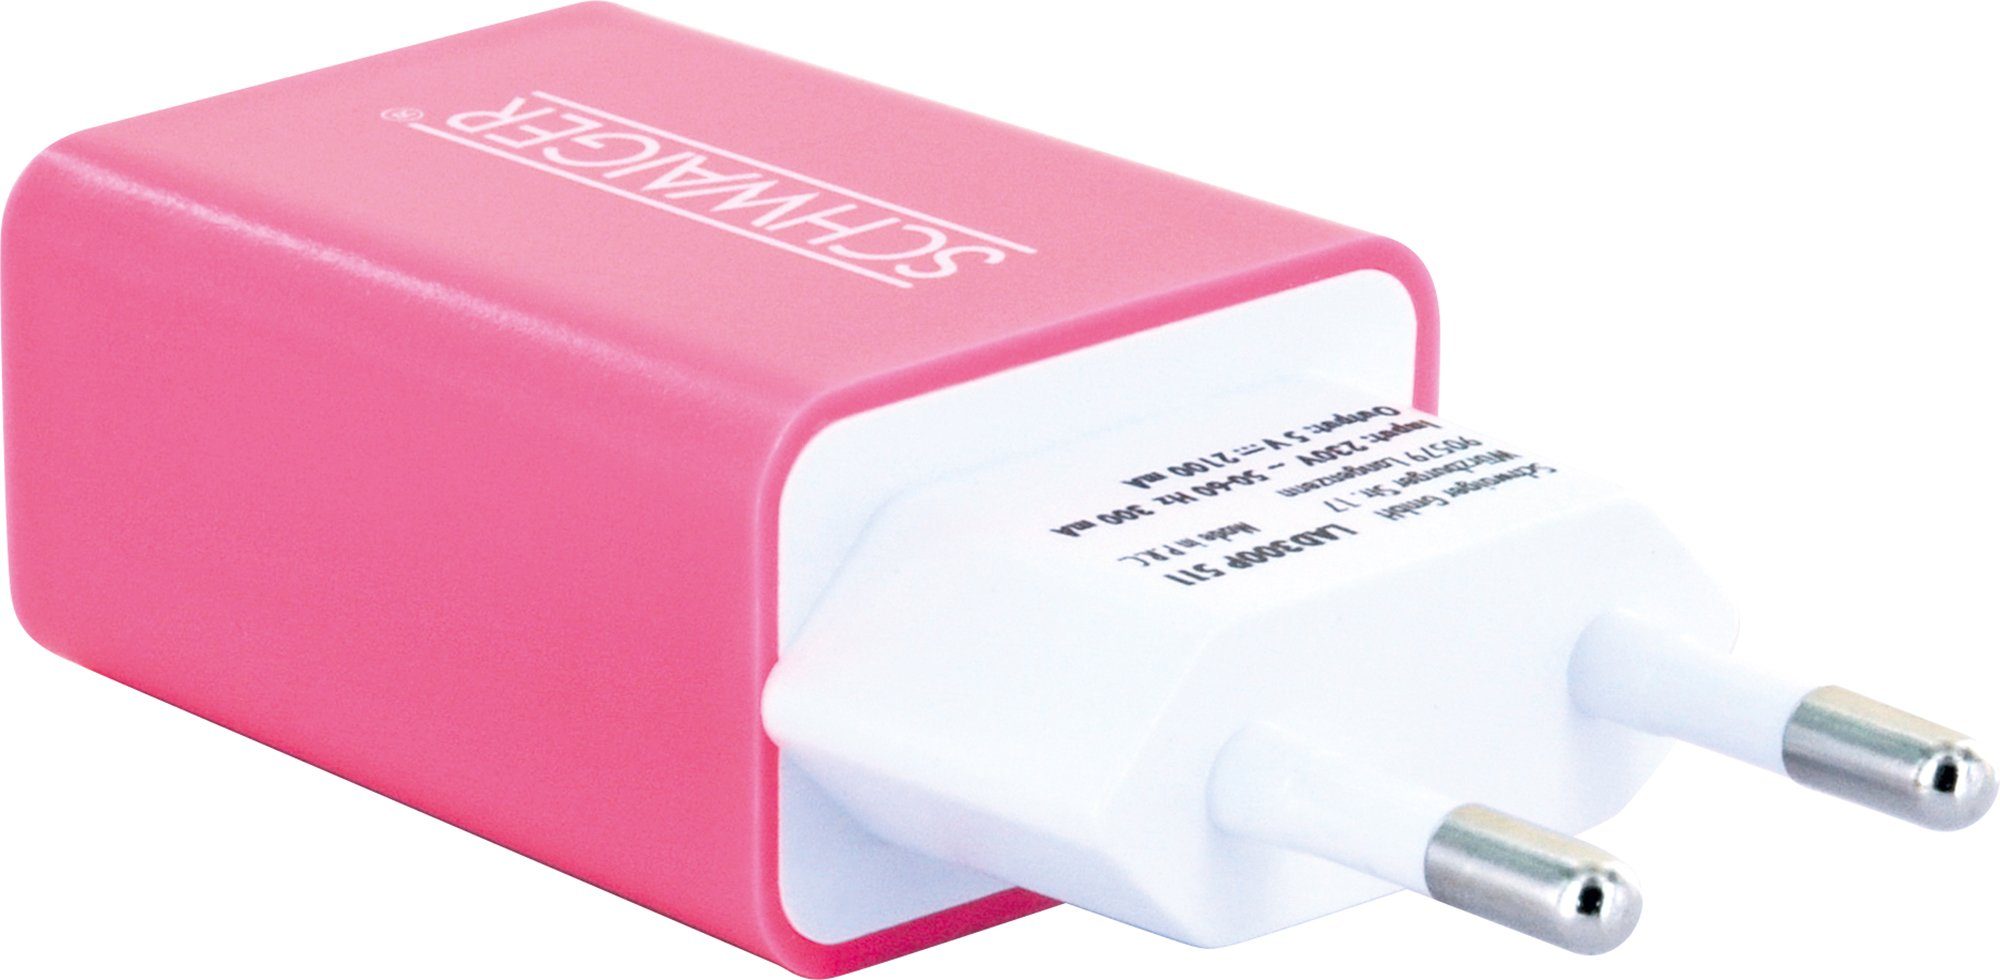 511 pink A LAD300P Multi-Schutz Eurostecker USB KFZ-Adapter zu integriertes Schwaiger Sicherheitssystem Buchse, 2.0